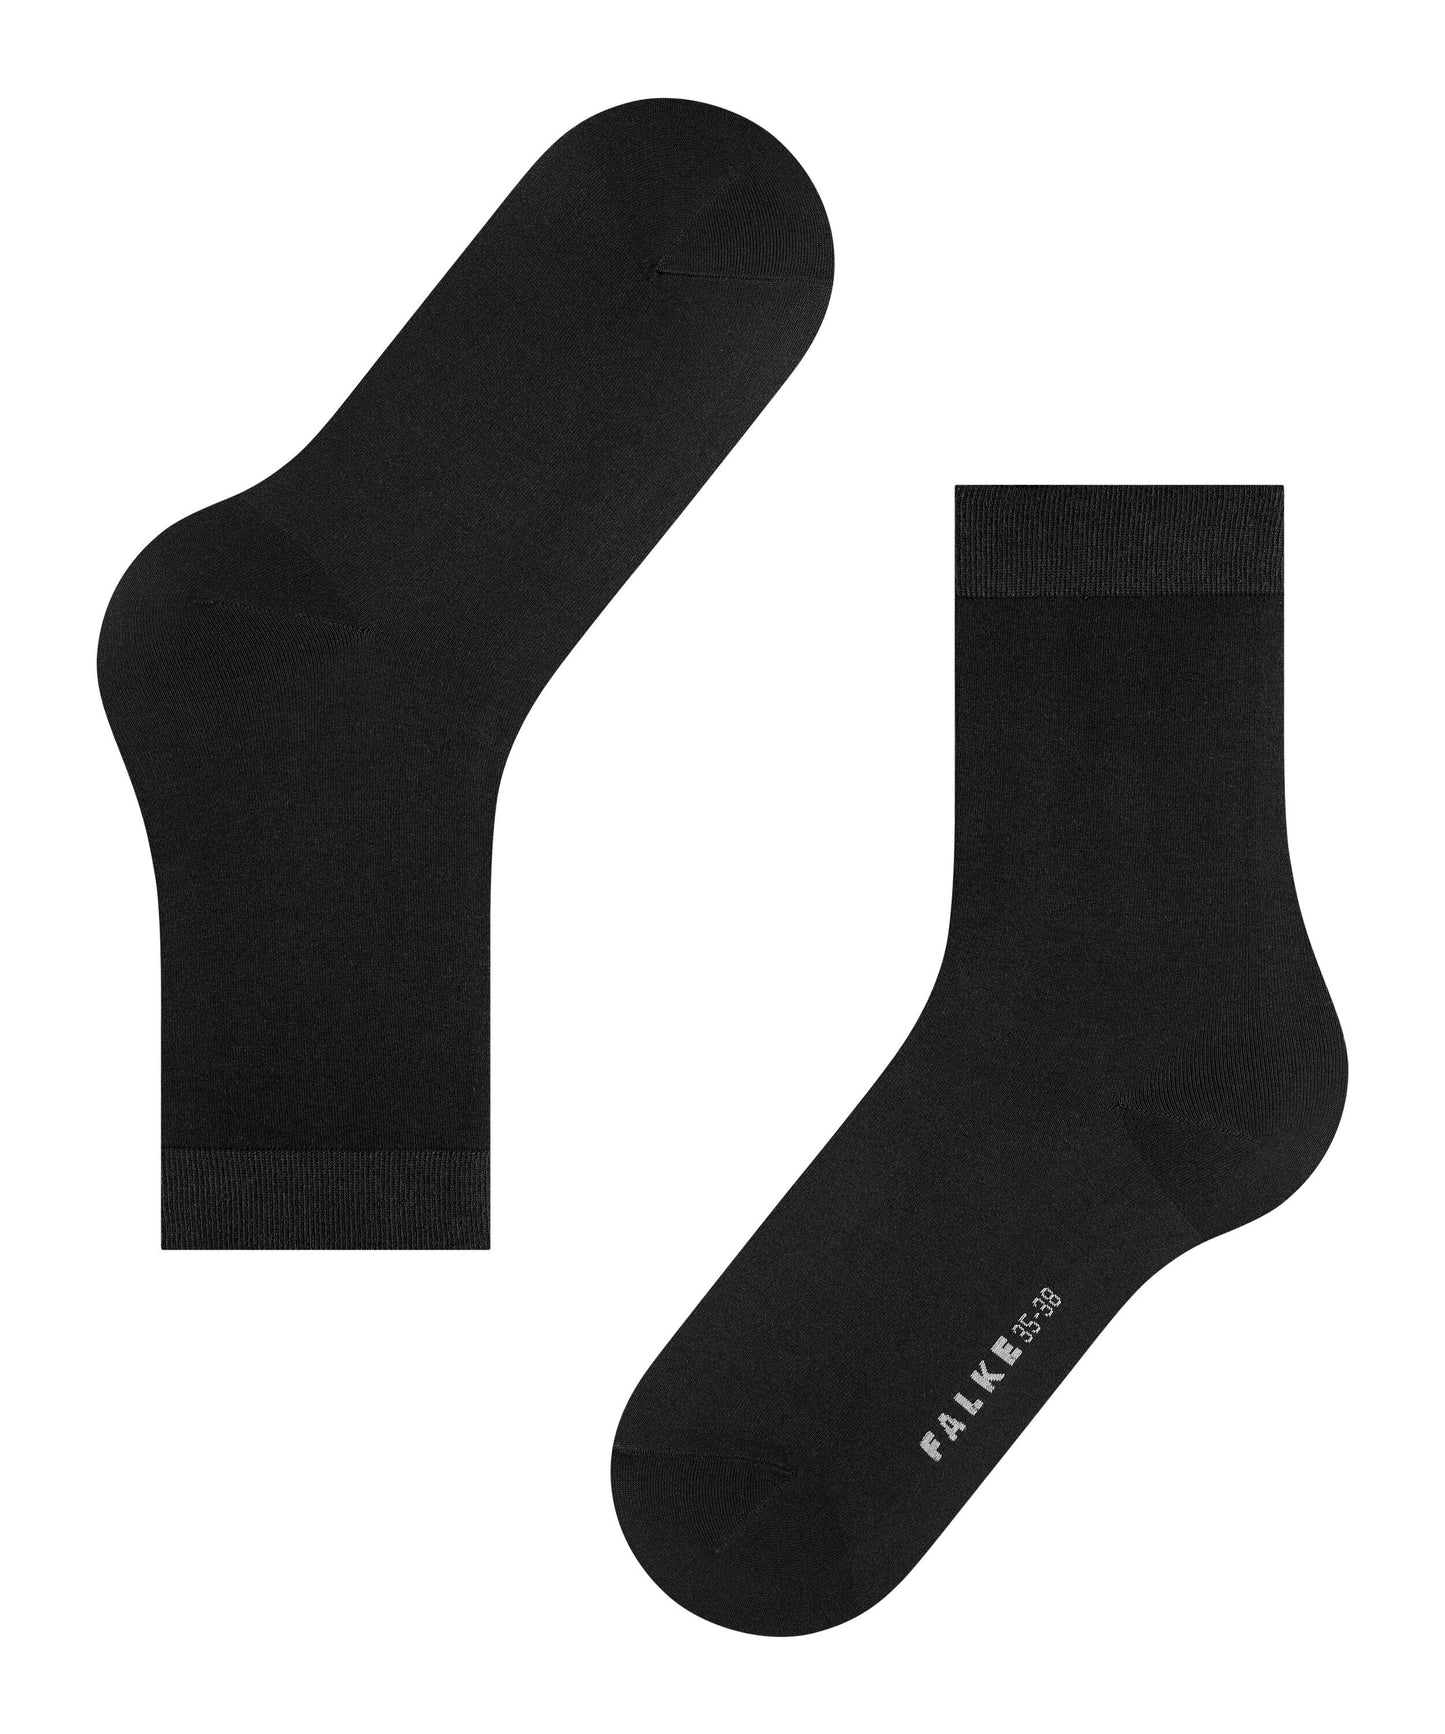 Socken Cotton Touch (Black)